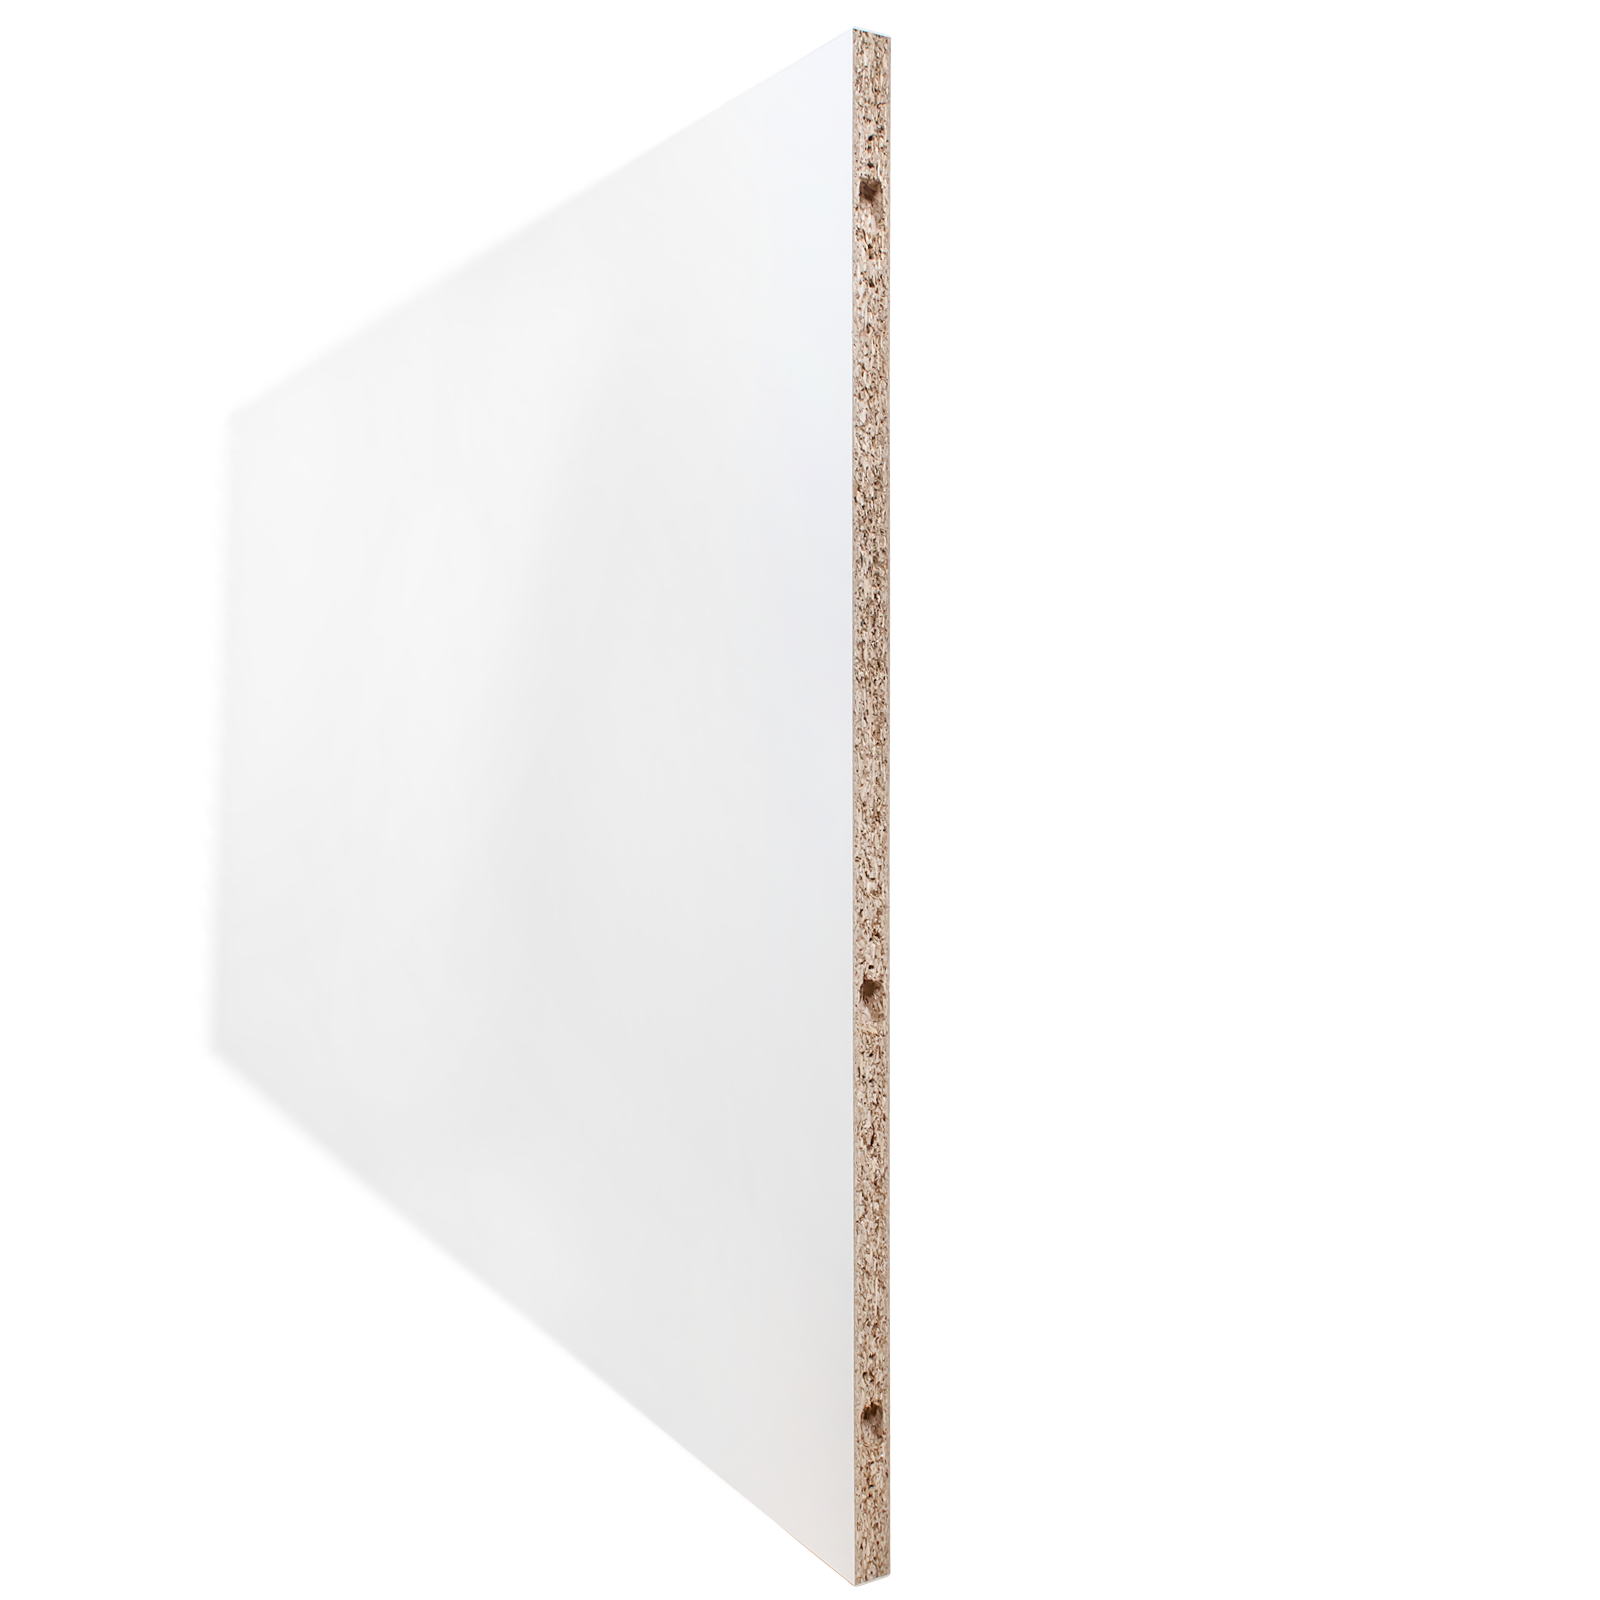 Schulte Porte pleine coulissante intérieure en bois, 151 x 203 cm, décor bois blanc, double porte - Poignée ronde + double amortisseur Softclose 3